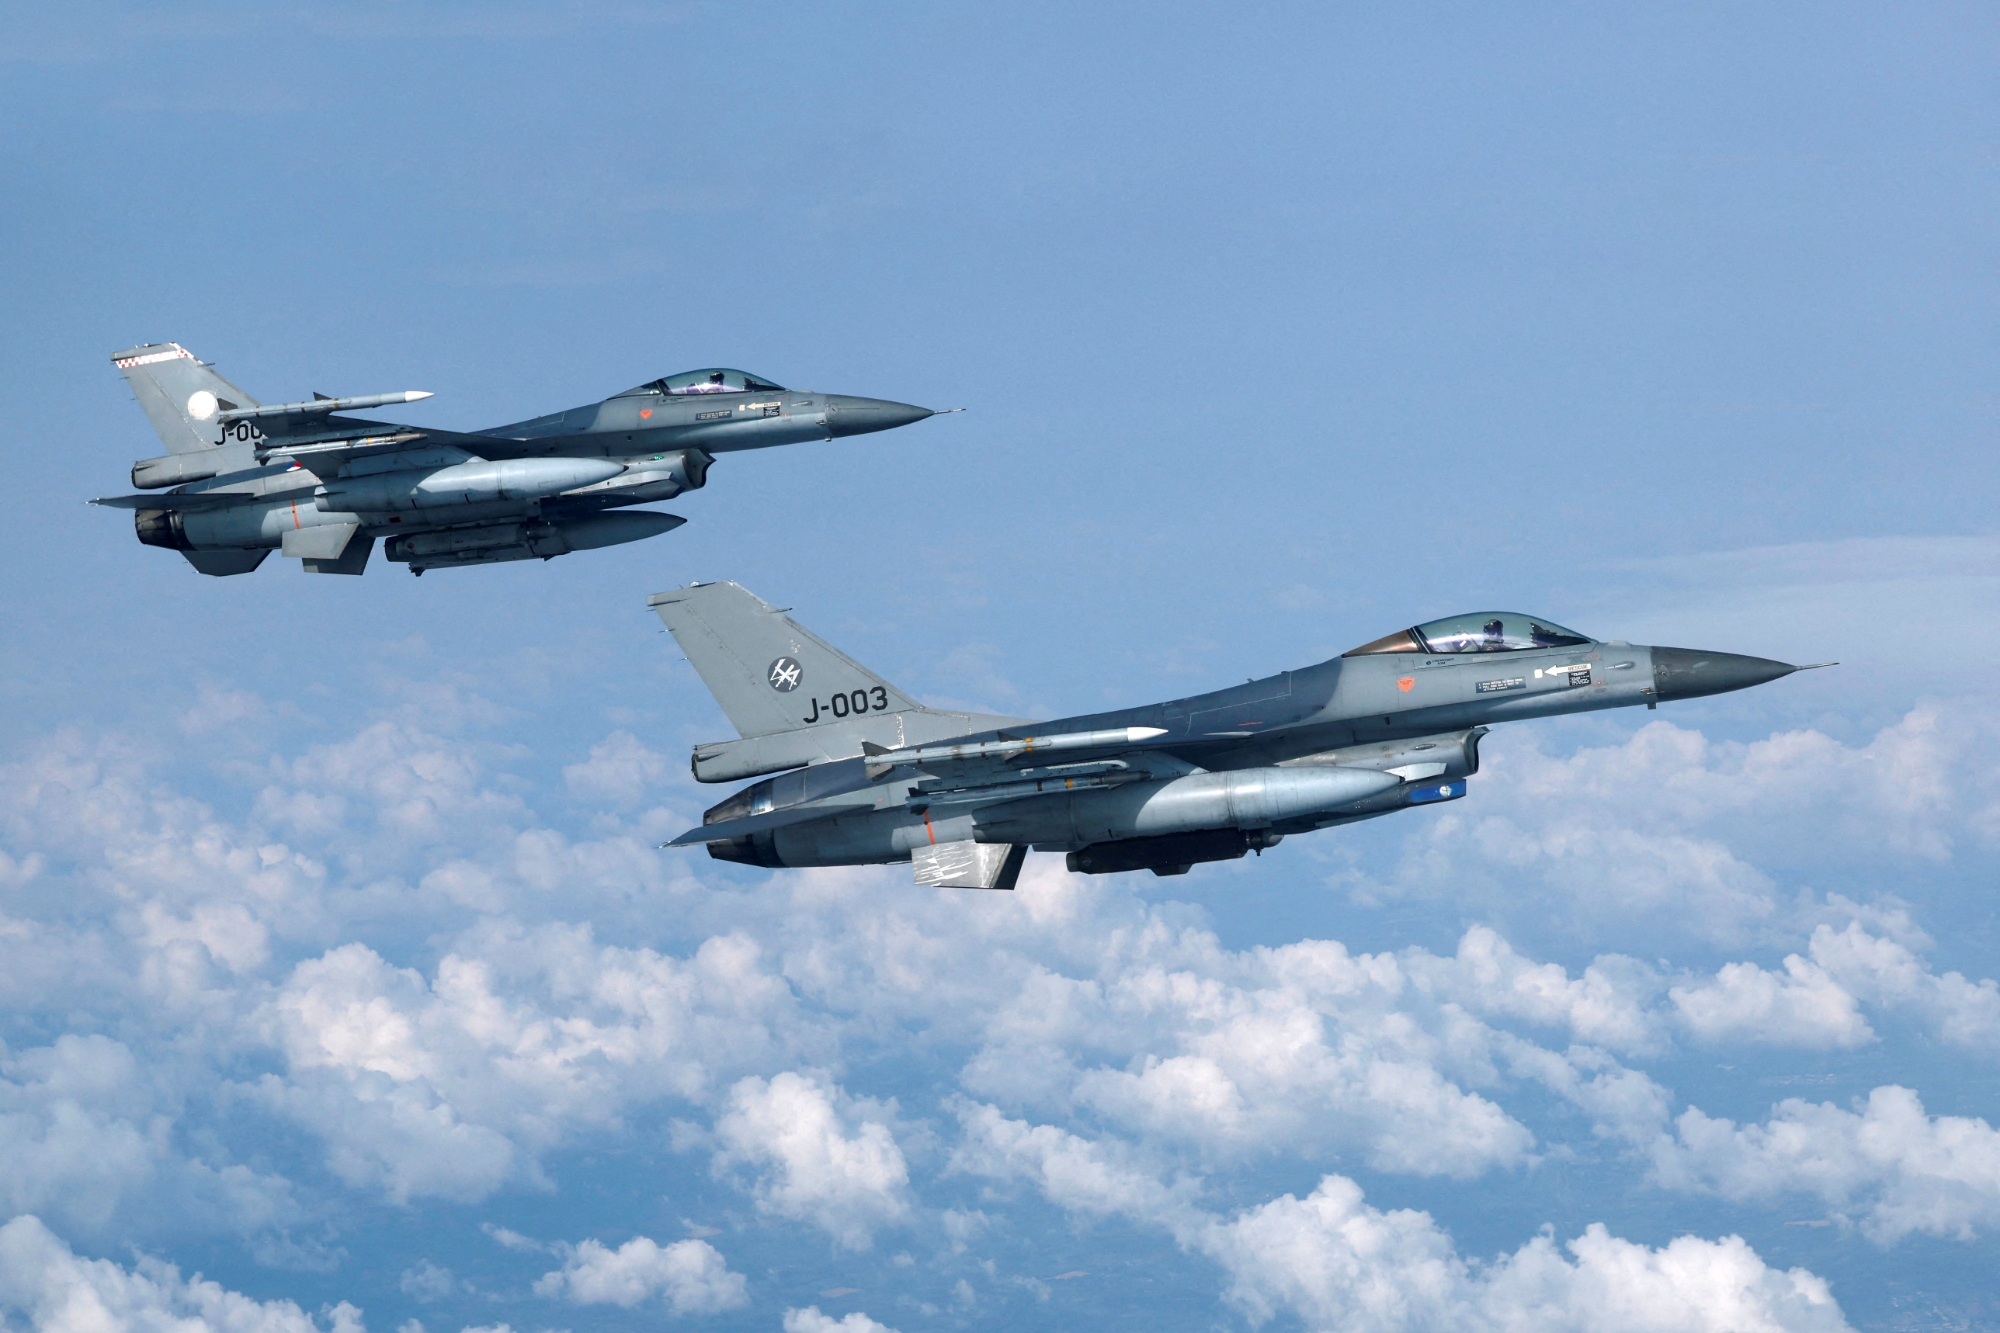 Offiziell: Niederlande verlegen 6 weitere F-16 Fighting Falcon-Kampfflugzeuge in die Ukraine